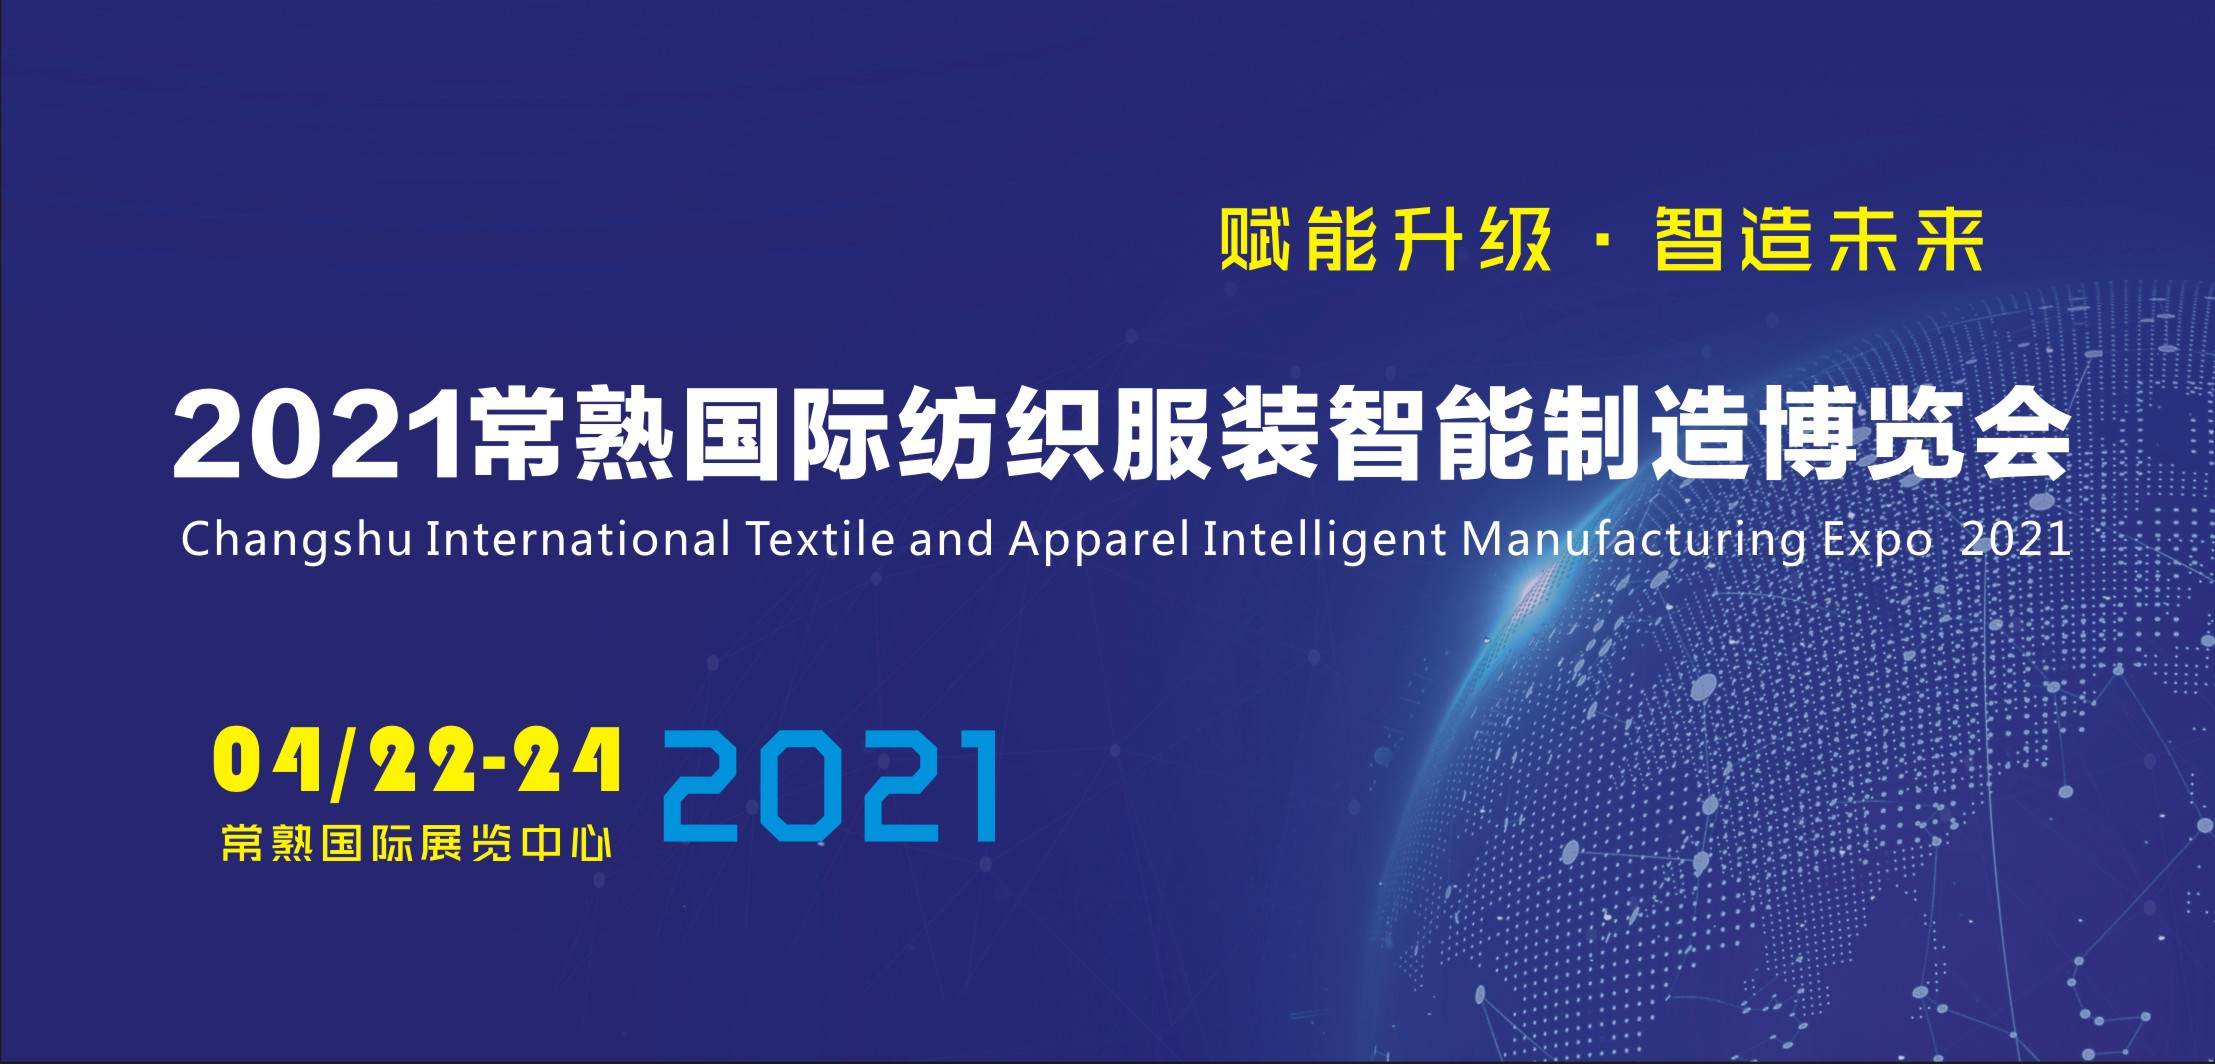 2021常熟纺织服装智能制造博览会